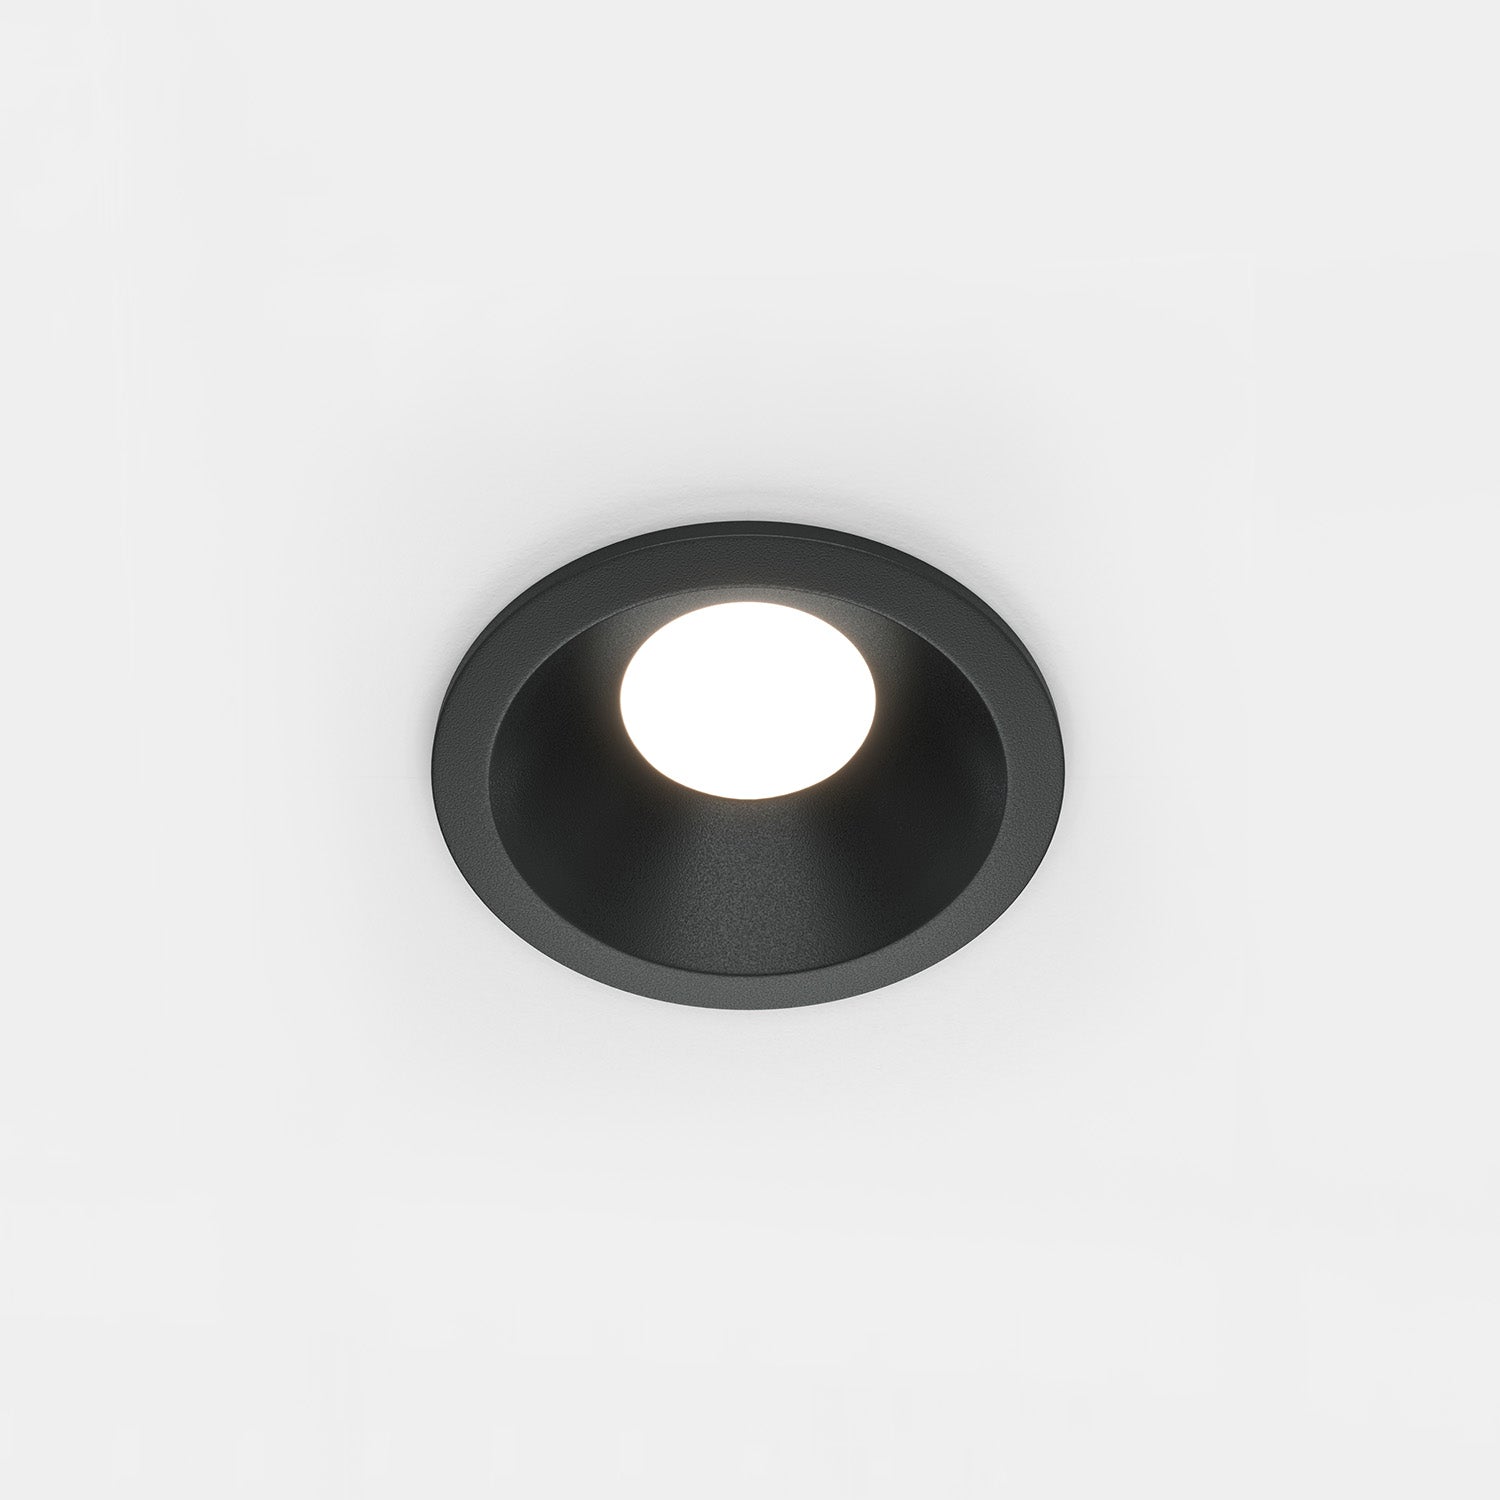 ZOOM A - Spot encastré rond extérieur étanche, noir ou blanc, 85mm